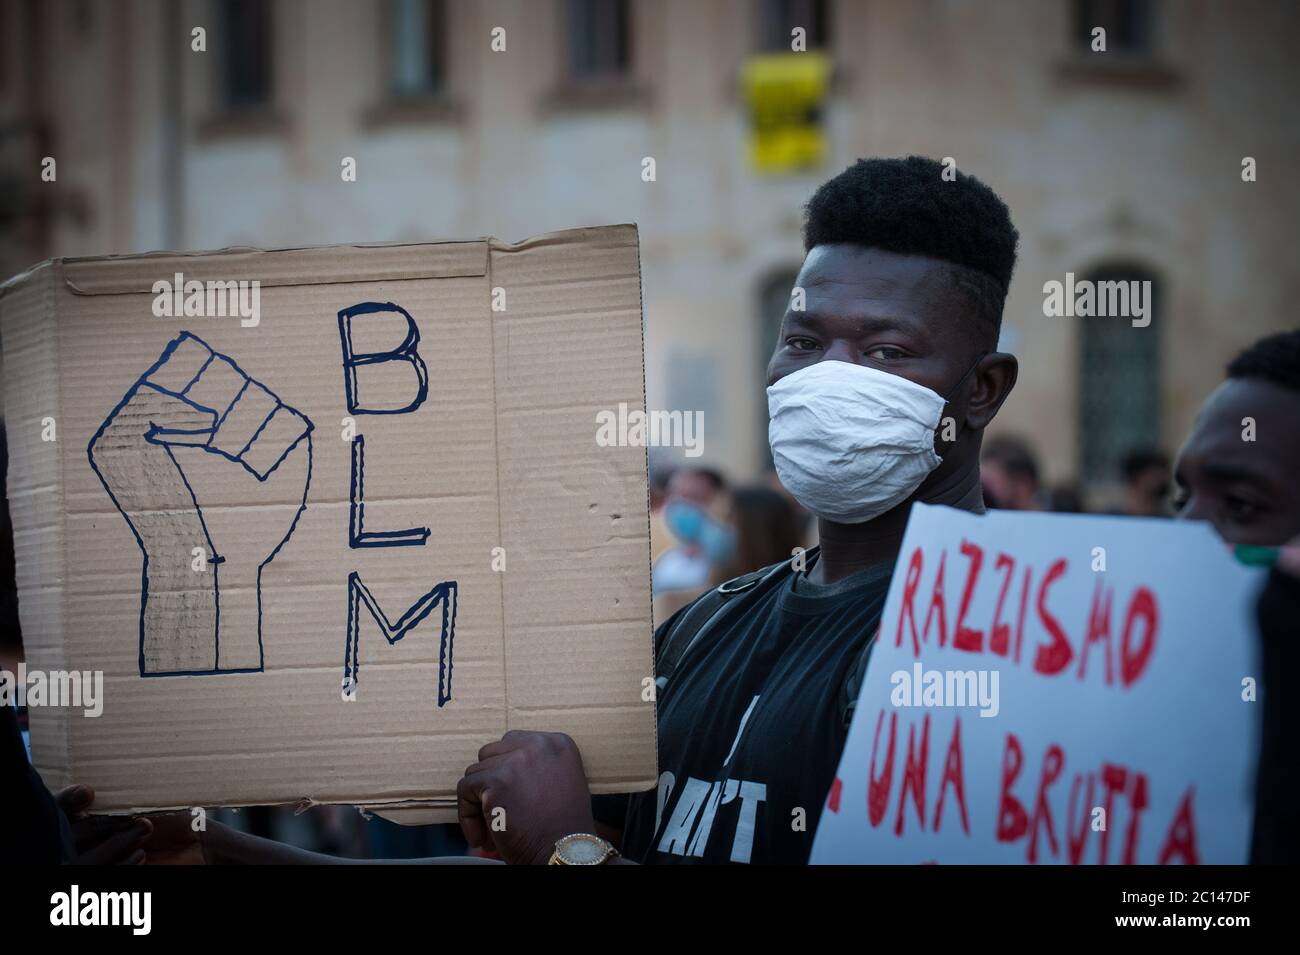 Flash MOB contro il razzismo a Lecce, Italia: Nero vita materia Foto Stock